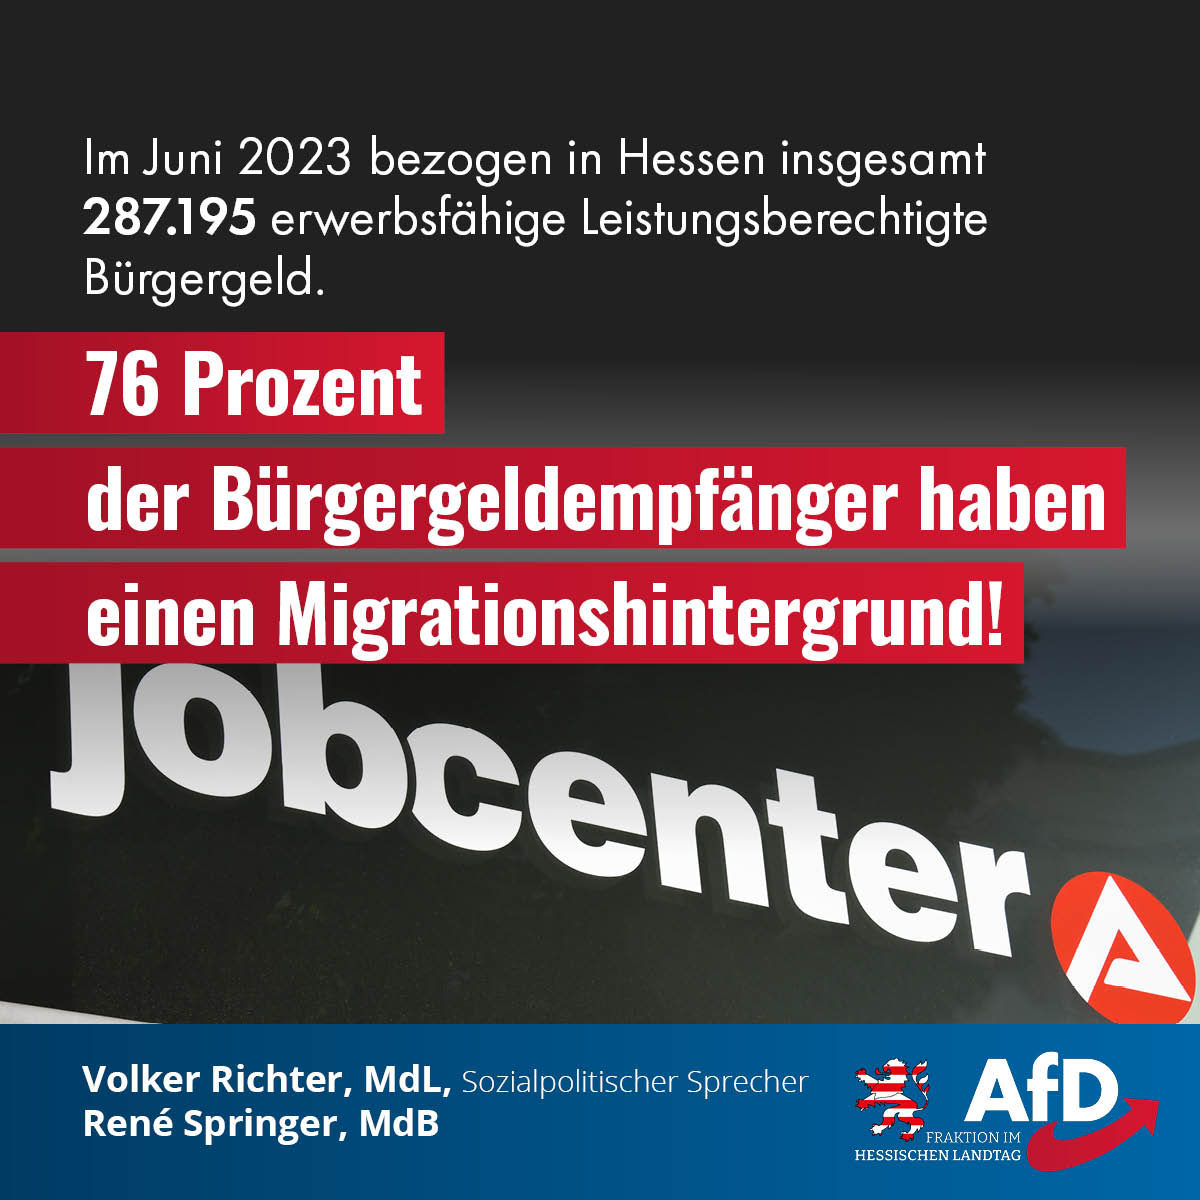 You are currently viewing 76 Prozent der Bürgergeldempfänger in Hessen haben einen Migrationshintergrund